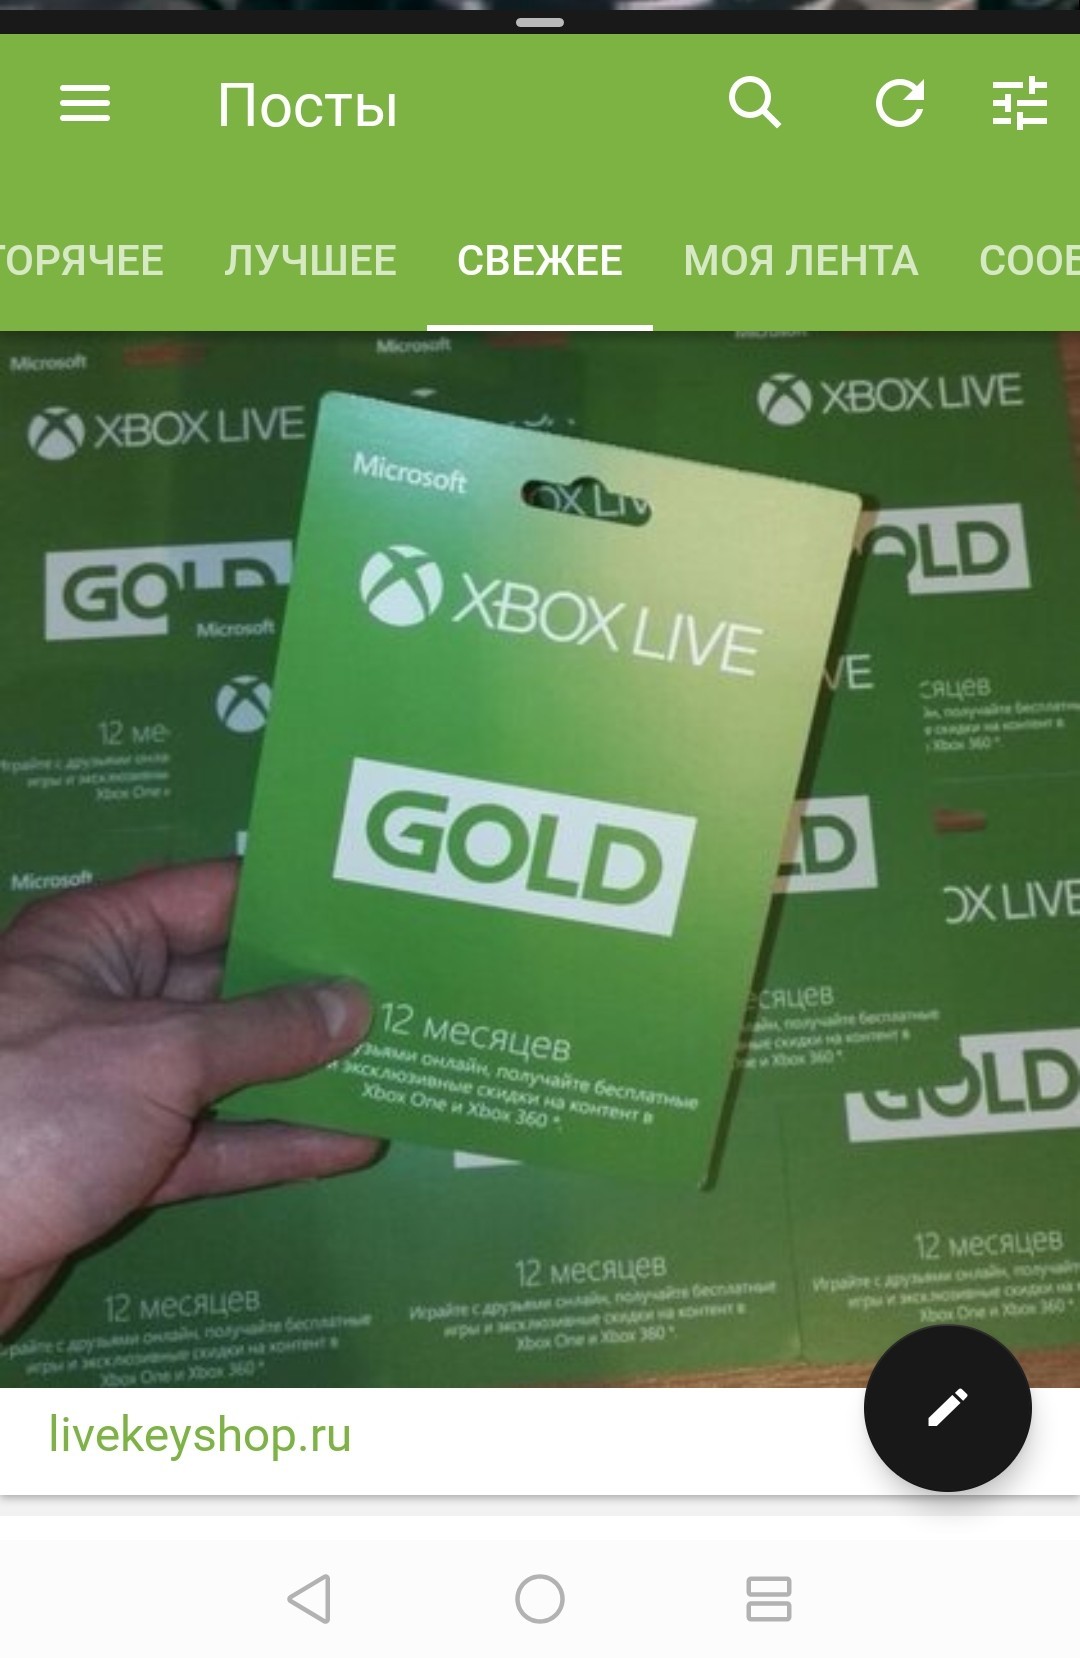 Купить подписку на xbox one. Xbox Live Gold. Xbox Live Gold 12. Подписка Xbox Live Gold на 12 месяцев. Подписка Xbox Live Gold.